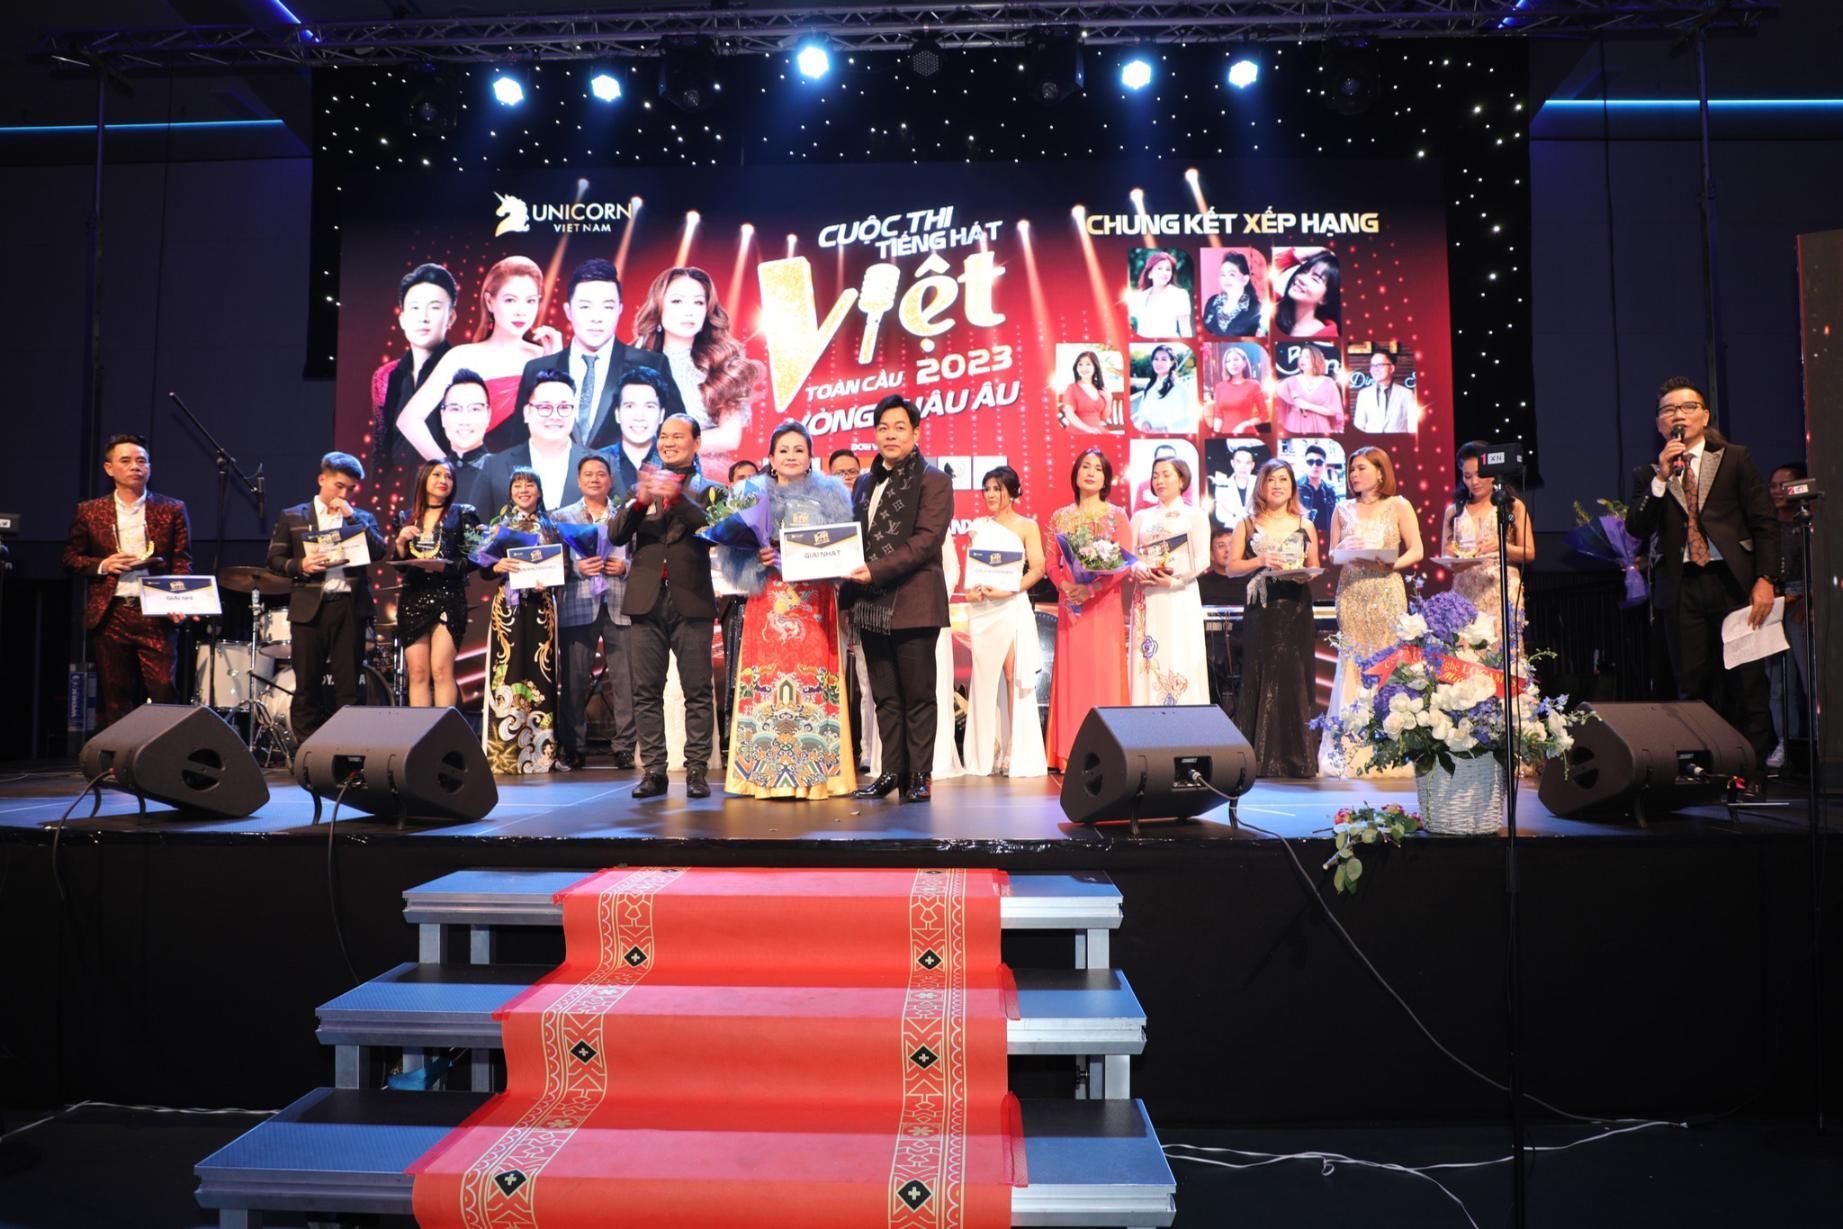 Tiếng hát Việt toàn cầu” Châu Âu 4 Thụy Vũ AC&M bất ngờ đi thi và giành giải nhất Tiếng hát Việt toàn cầu